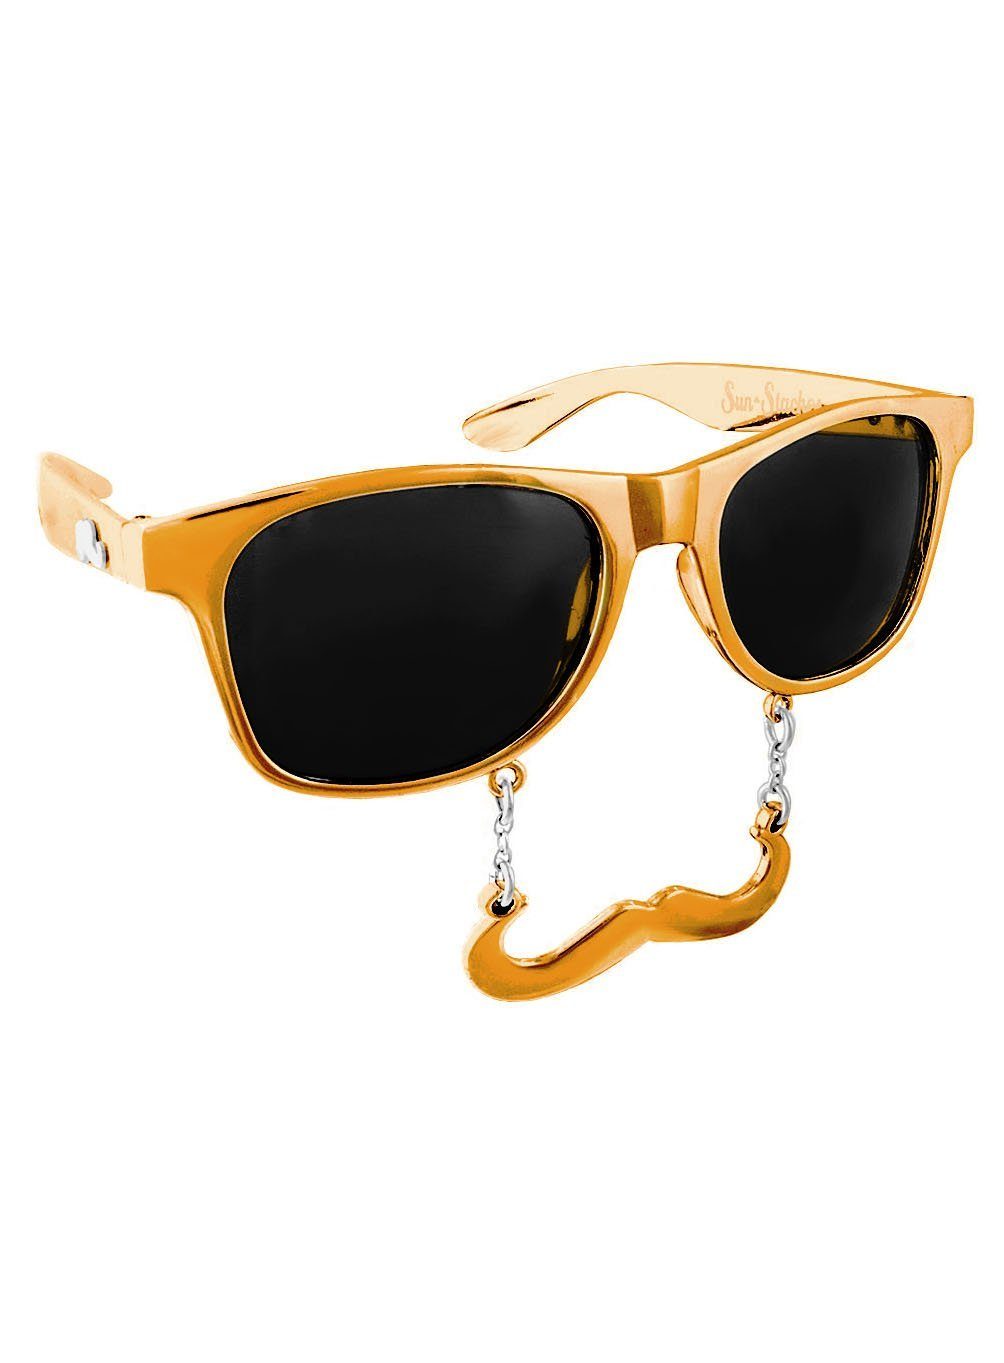 Sun Staches Kostüm Partybrille Classic gold, Lustige Brille mit Bart